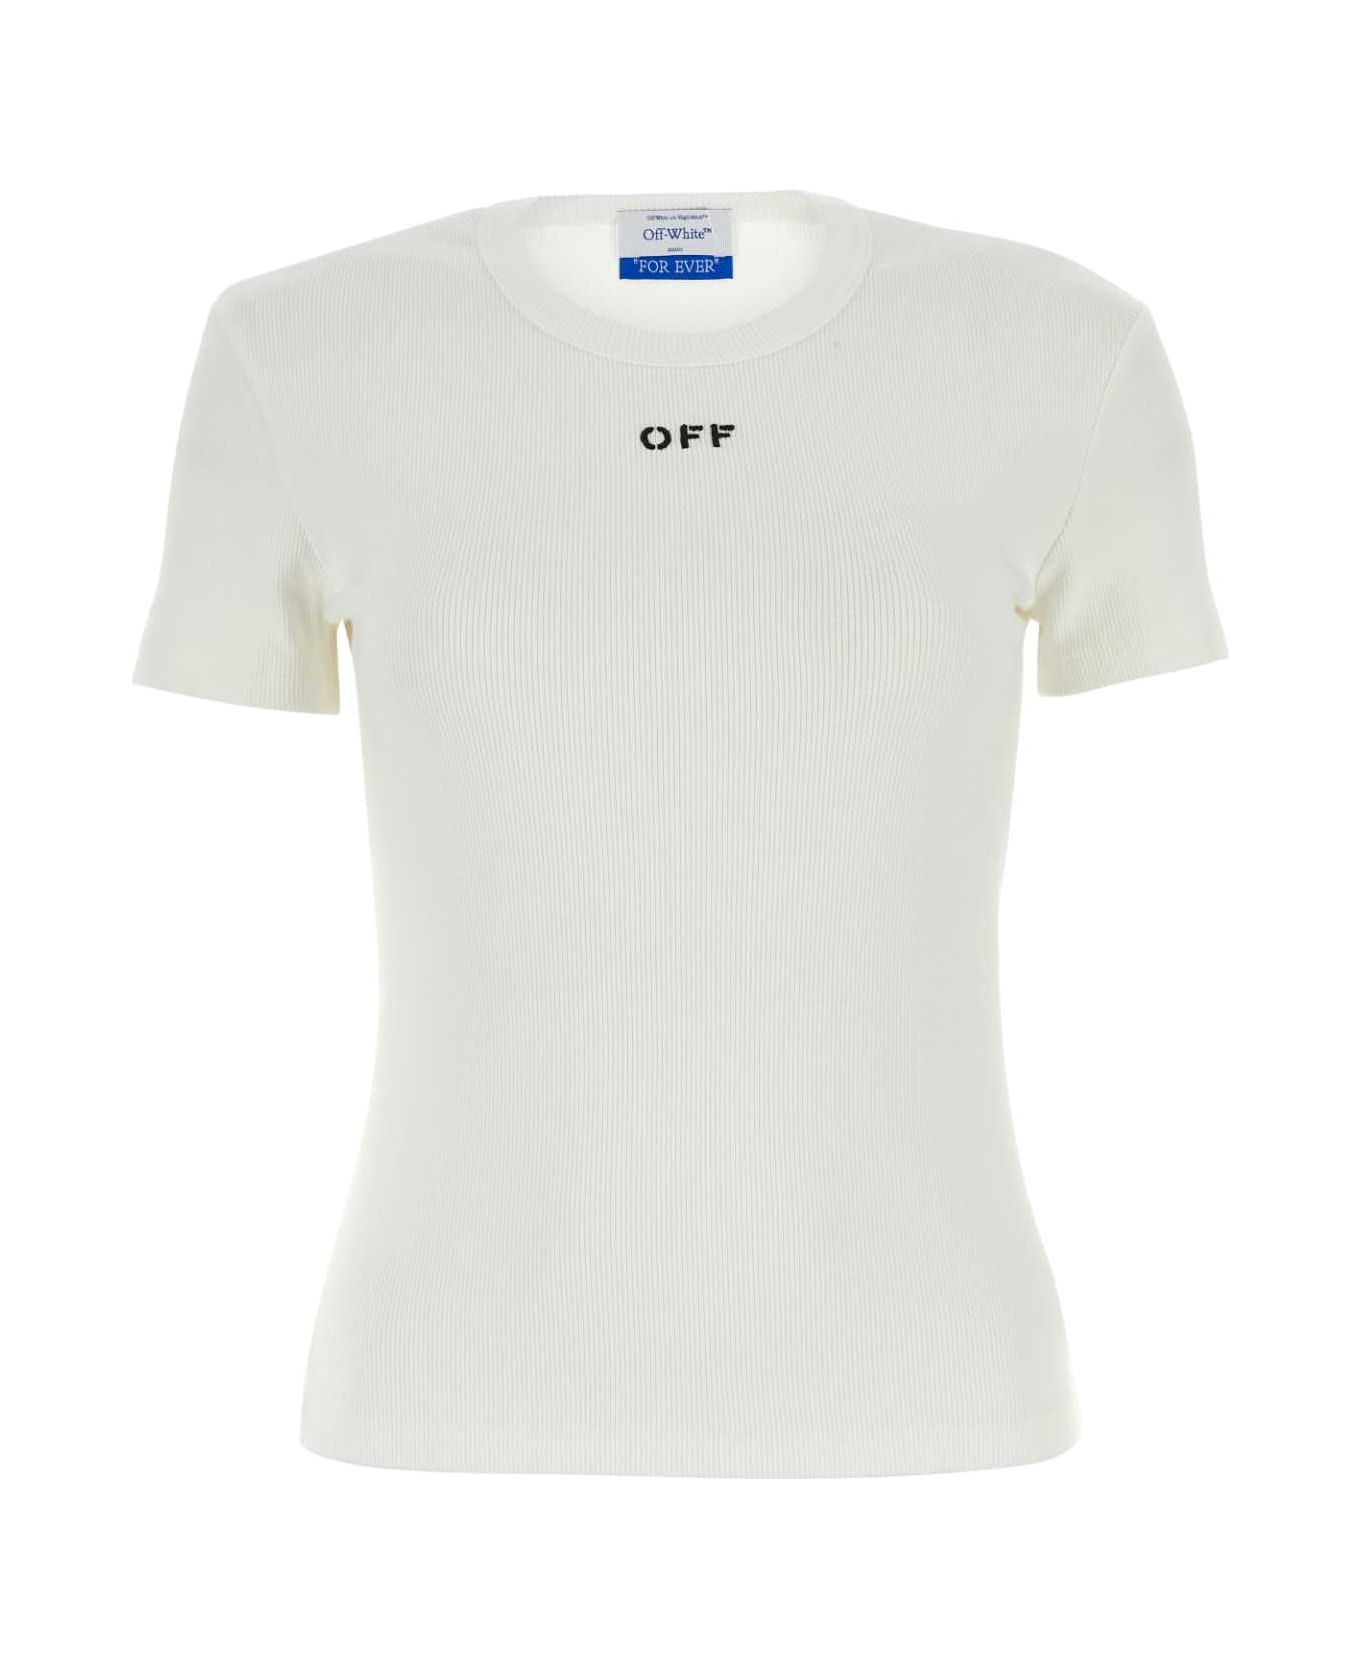 Off-White White Stretch Cotton T-shirt - WHITEBLACK